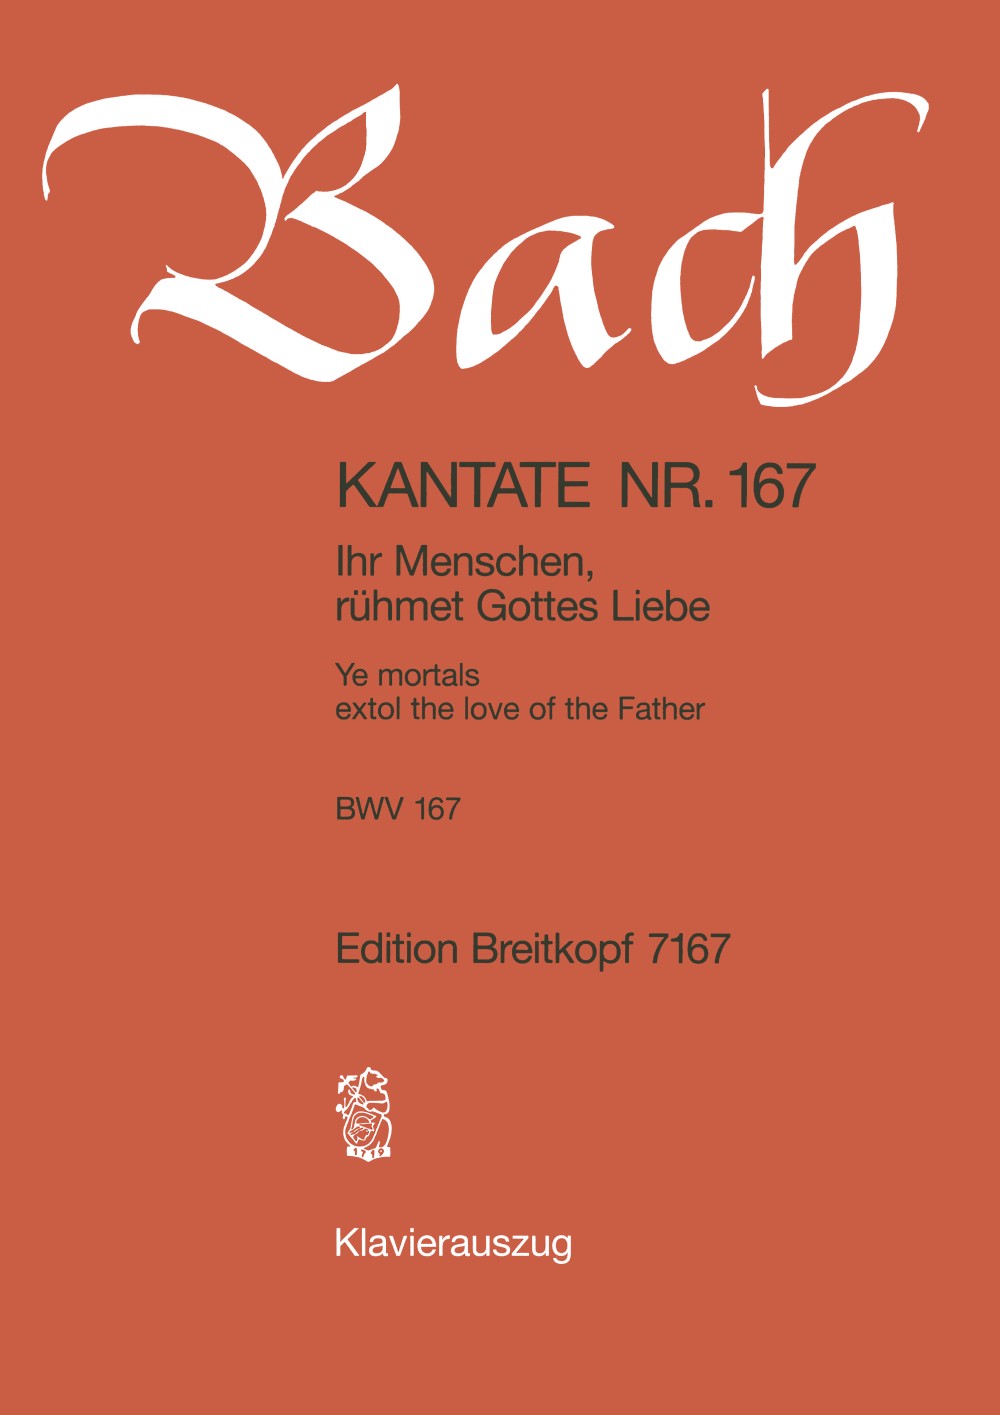 Bach: Ihr Menschen, rühmet Gottes Liebe, BWV 167